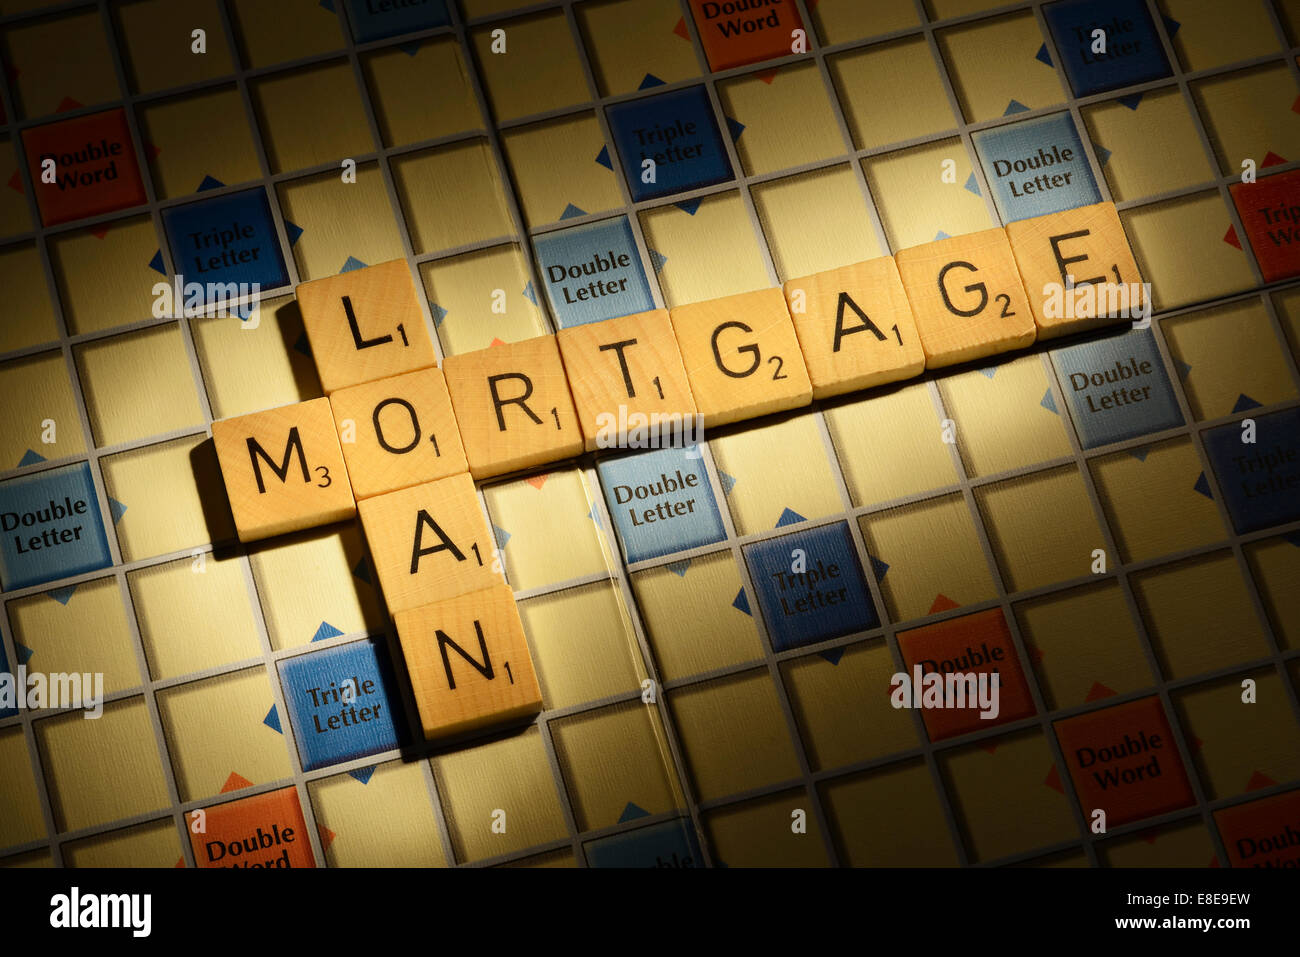 Scheda di Scrabble con le parole di prestito ipotecario Foto Stock